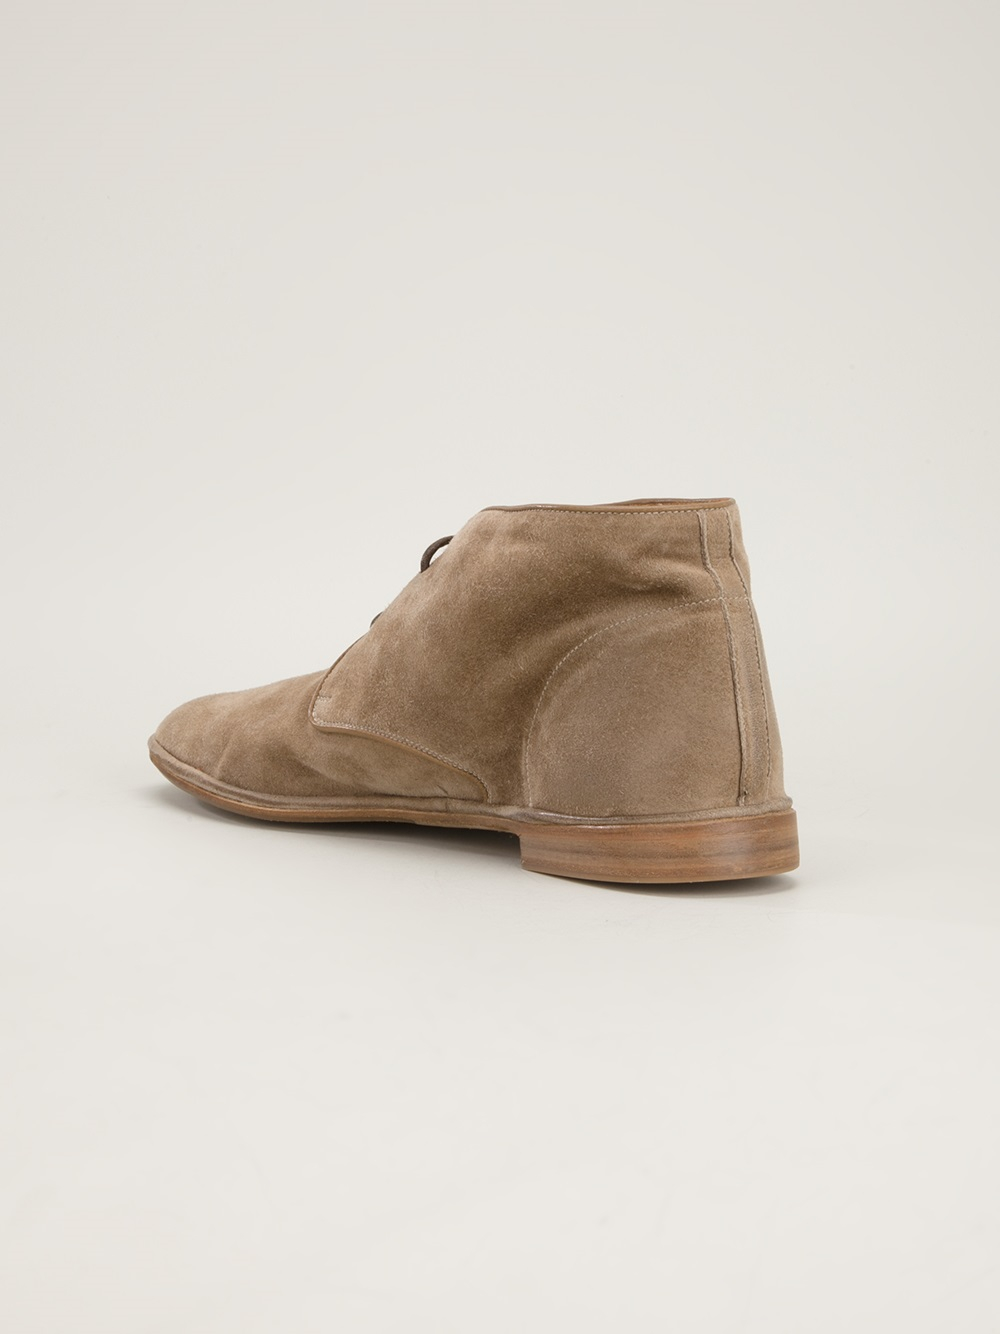 Lyst - Silvano Sassetti Desert Shoe in Natural for Men